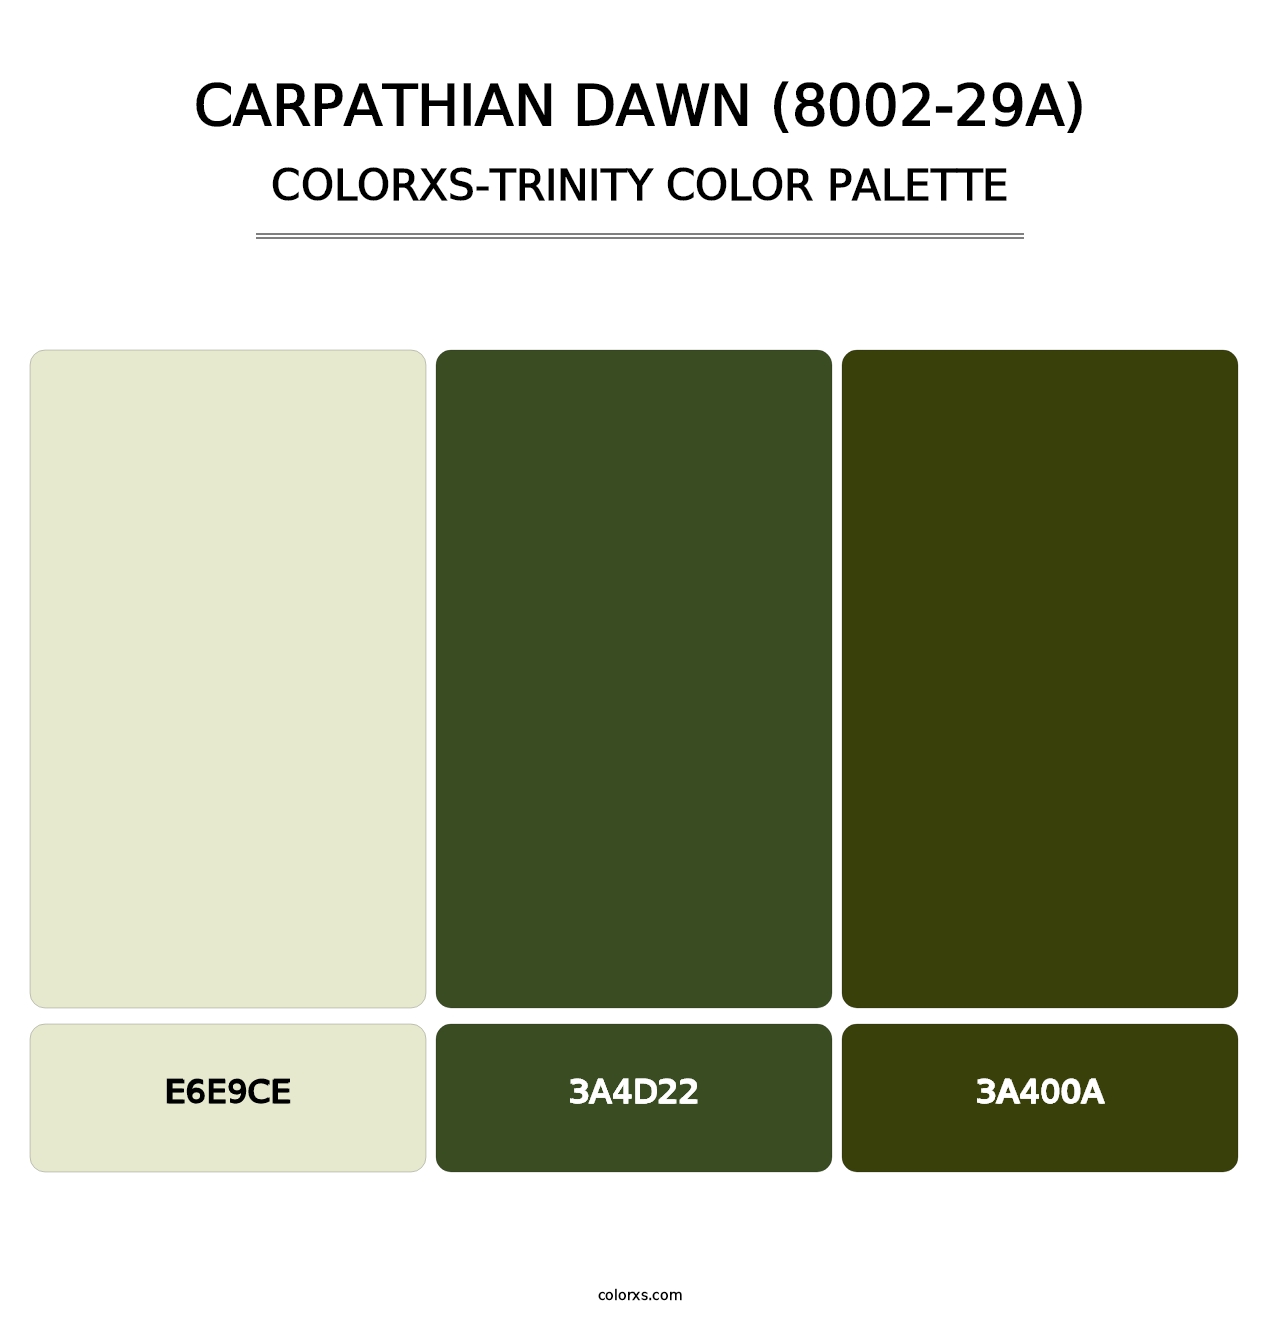 Carpathian Dawn (8002-29A) - Colorxs Trinity Palette